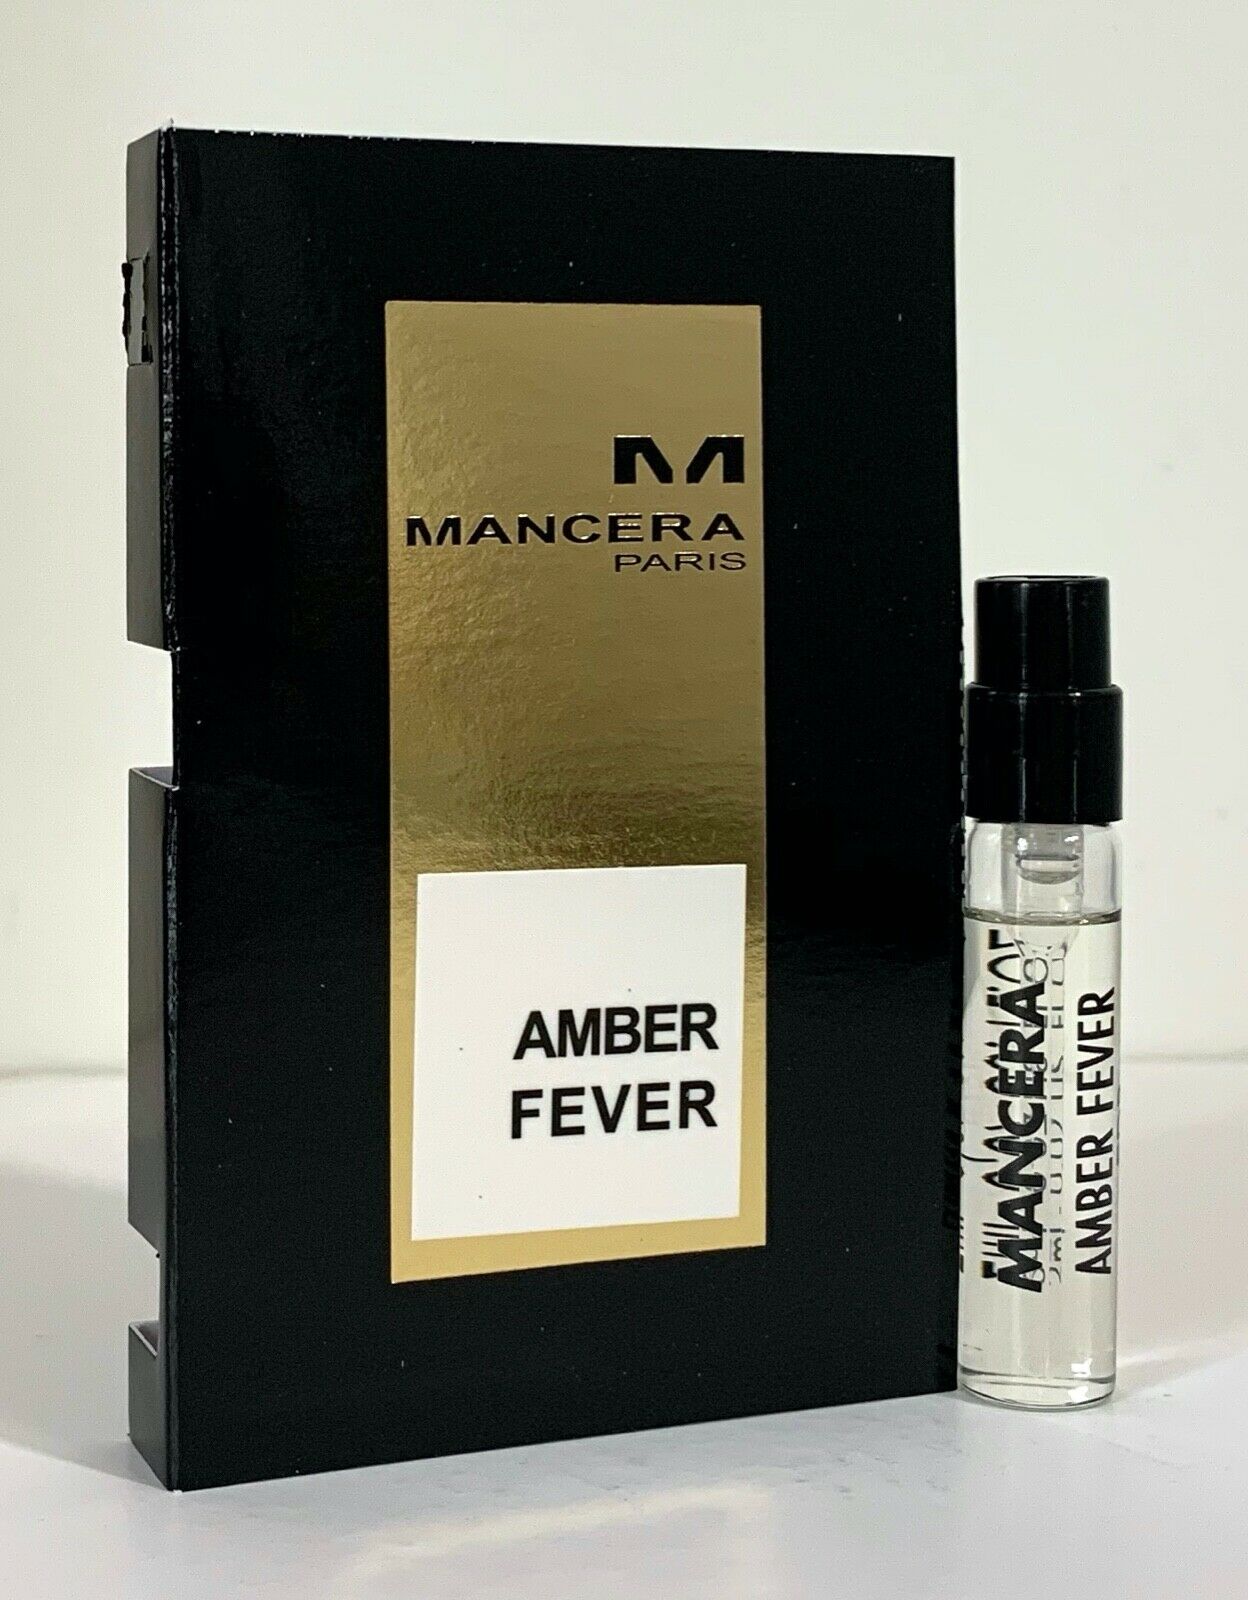 skvrna Amber Fever oficiální vzorek vůně 2ml 0.06 fl. oz., Mancera Amber Fever 2 ml 0.06 fl. oz. oficiální vzorek parfému